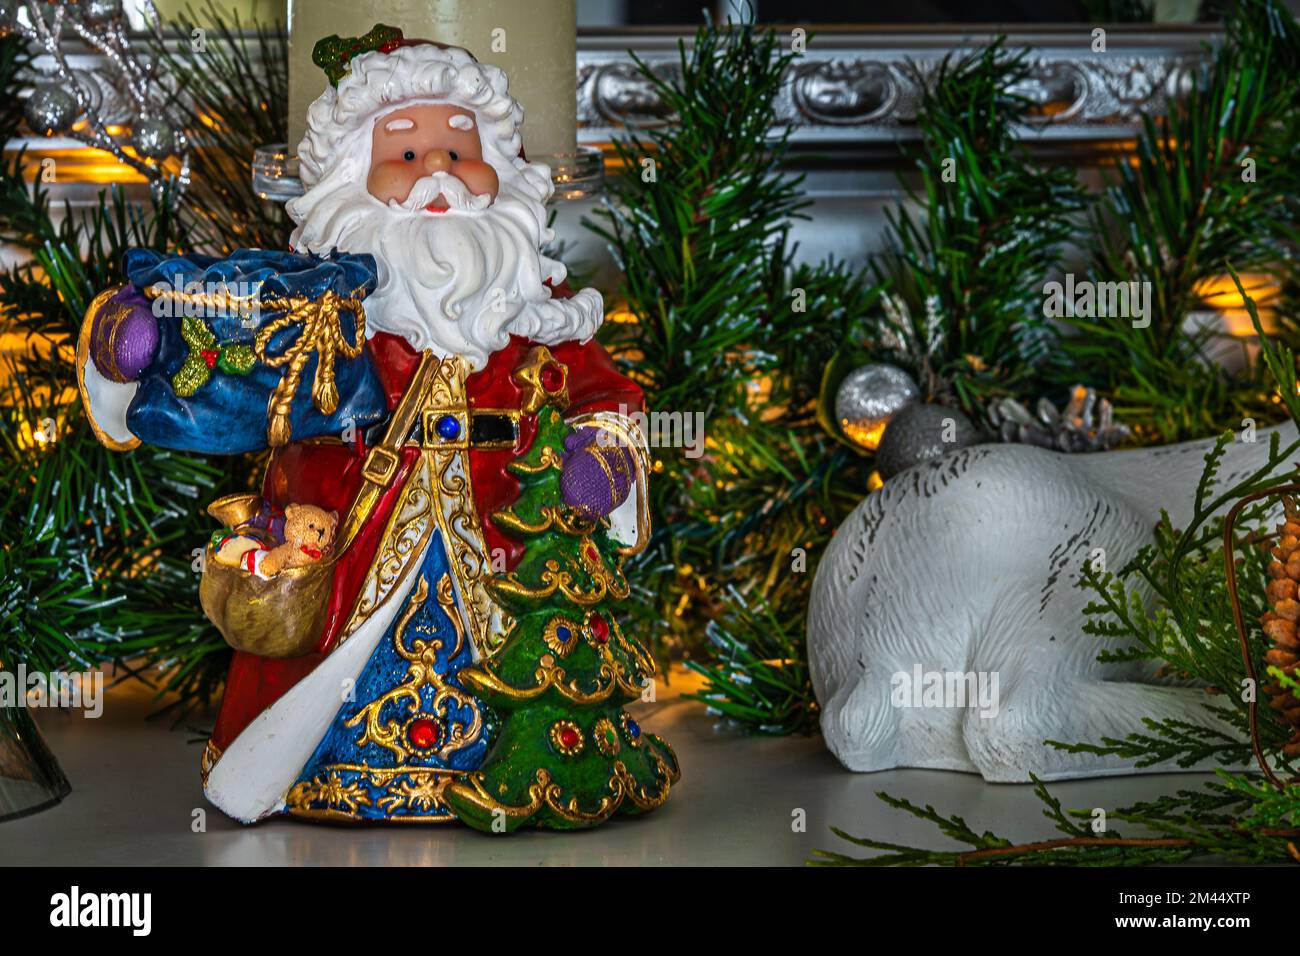 Weihnachtsdekorationen. Der Weihnachtsmann am Kamin und andere Weihnachtsdekorationen. Stockfoto